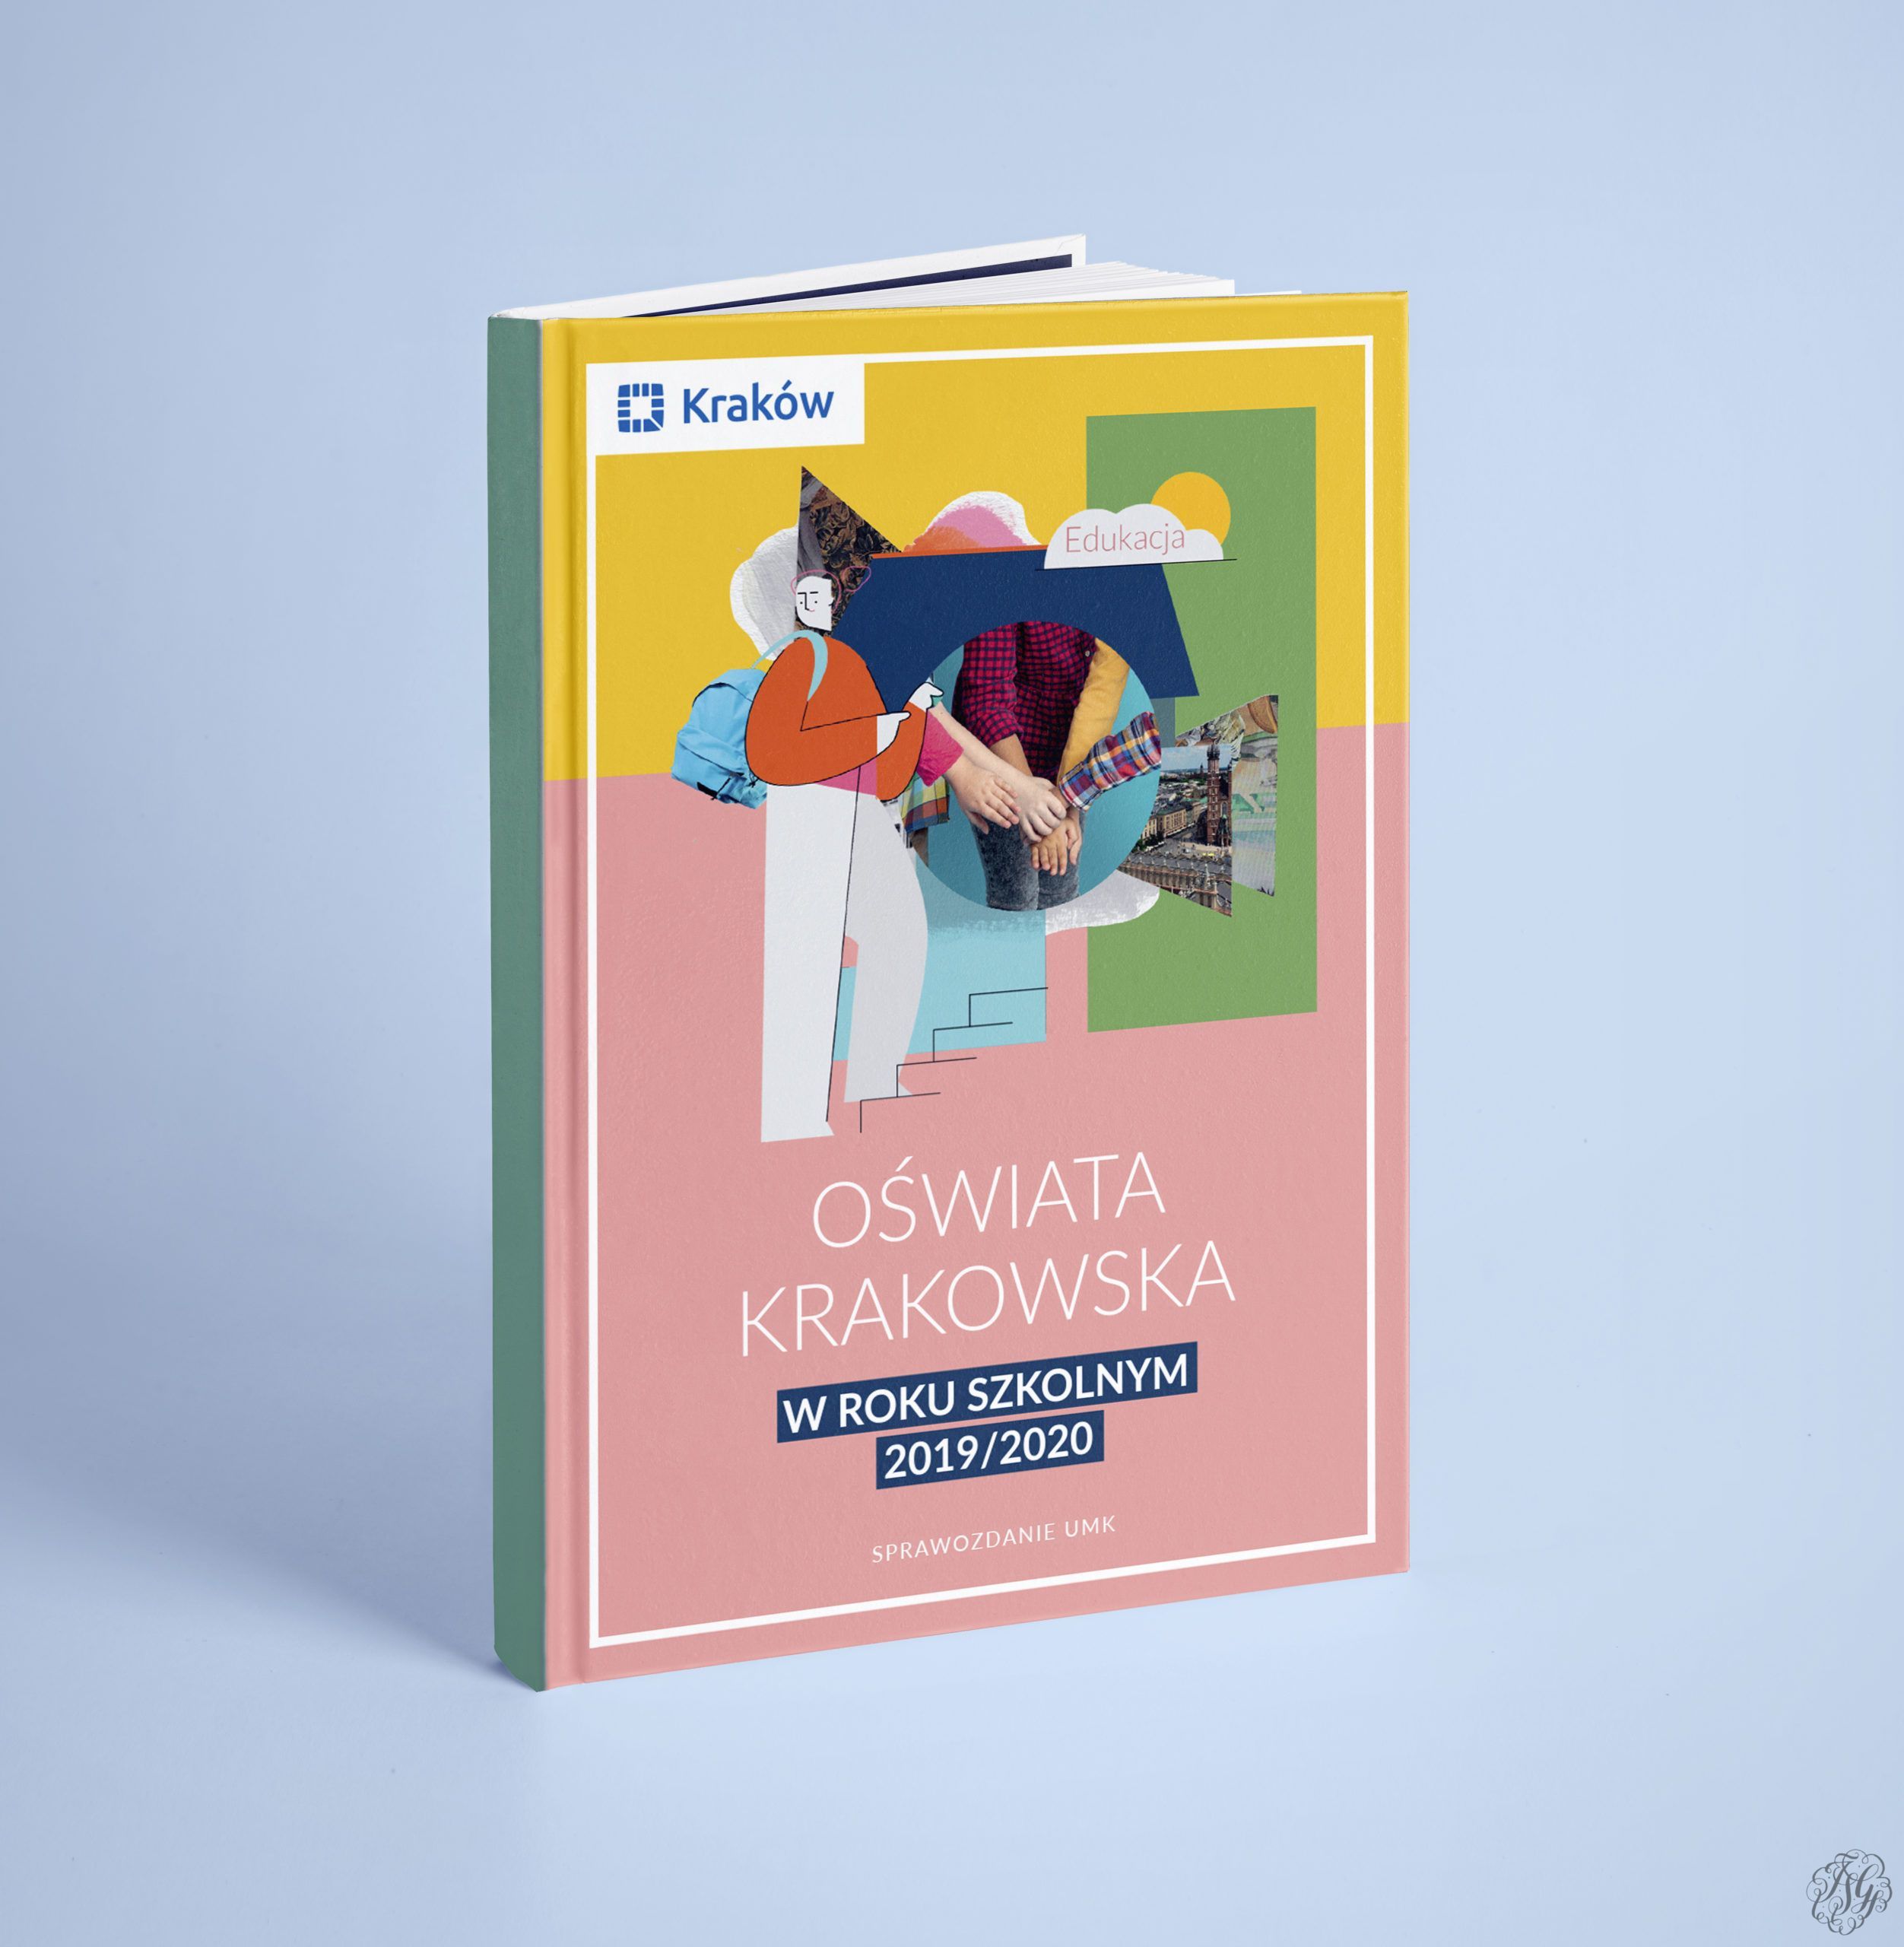 Education in Krakow 2019/2020